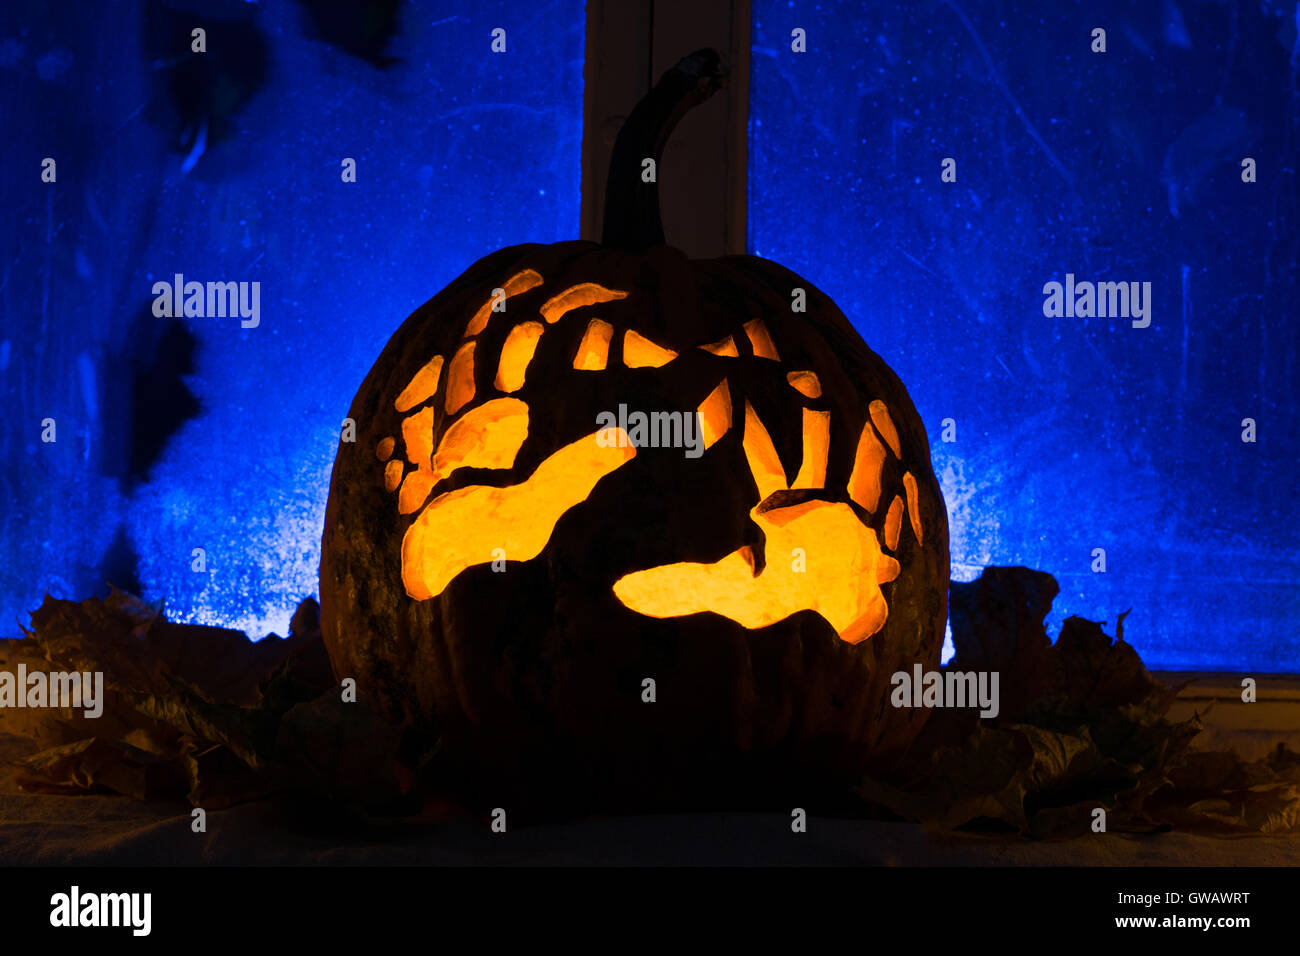 Foto für einen Urlaub, Halloween, Kürbis mit Händen gegen einen alten Fenster mit Herbstlaub Stockfoto